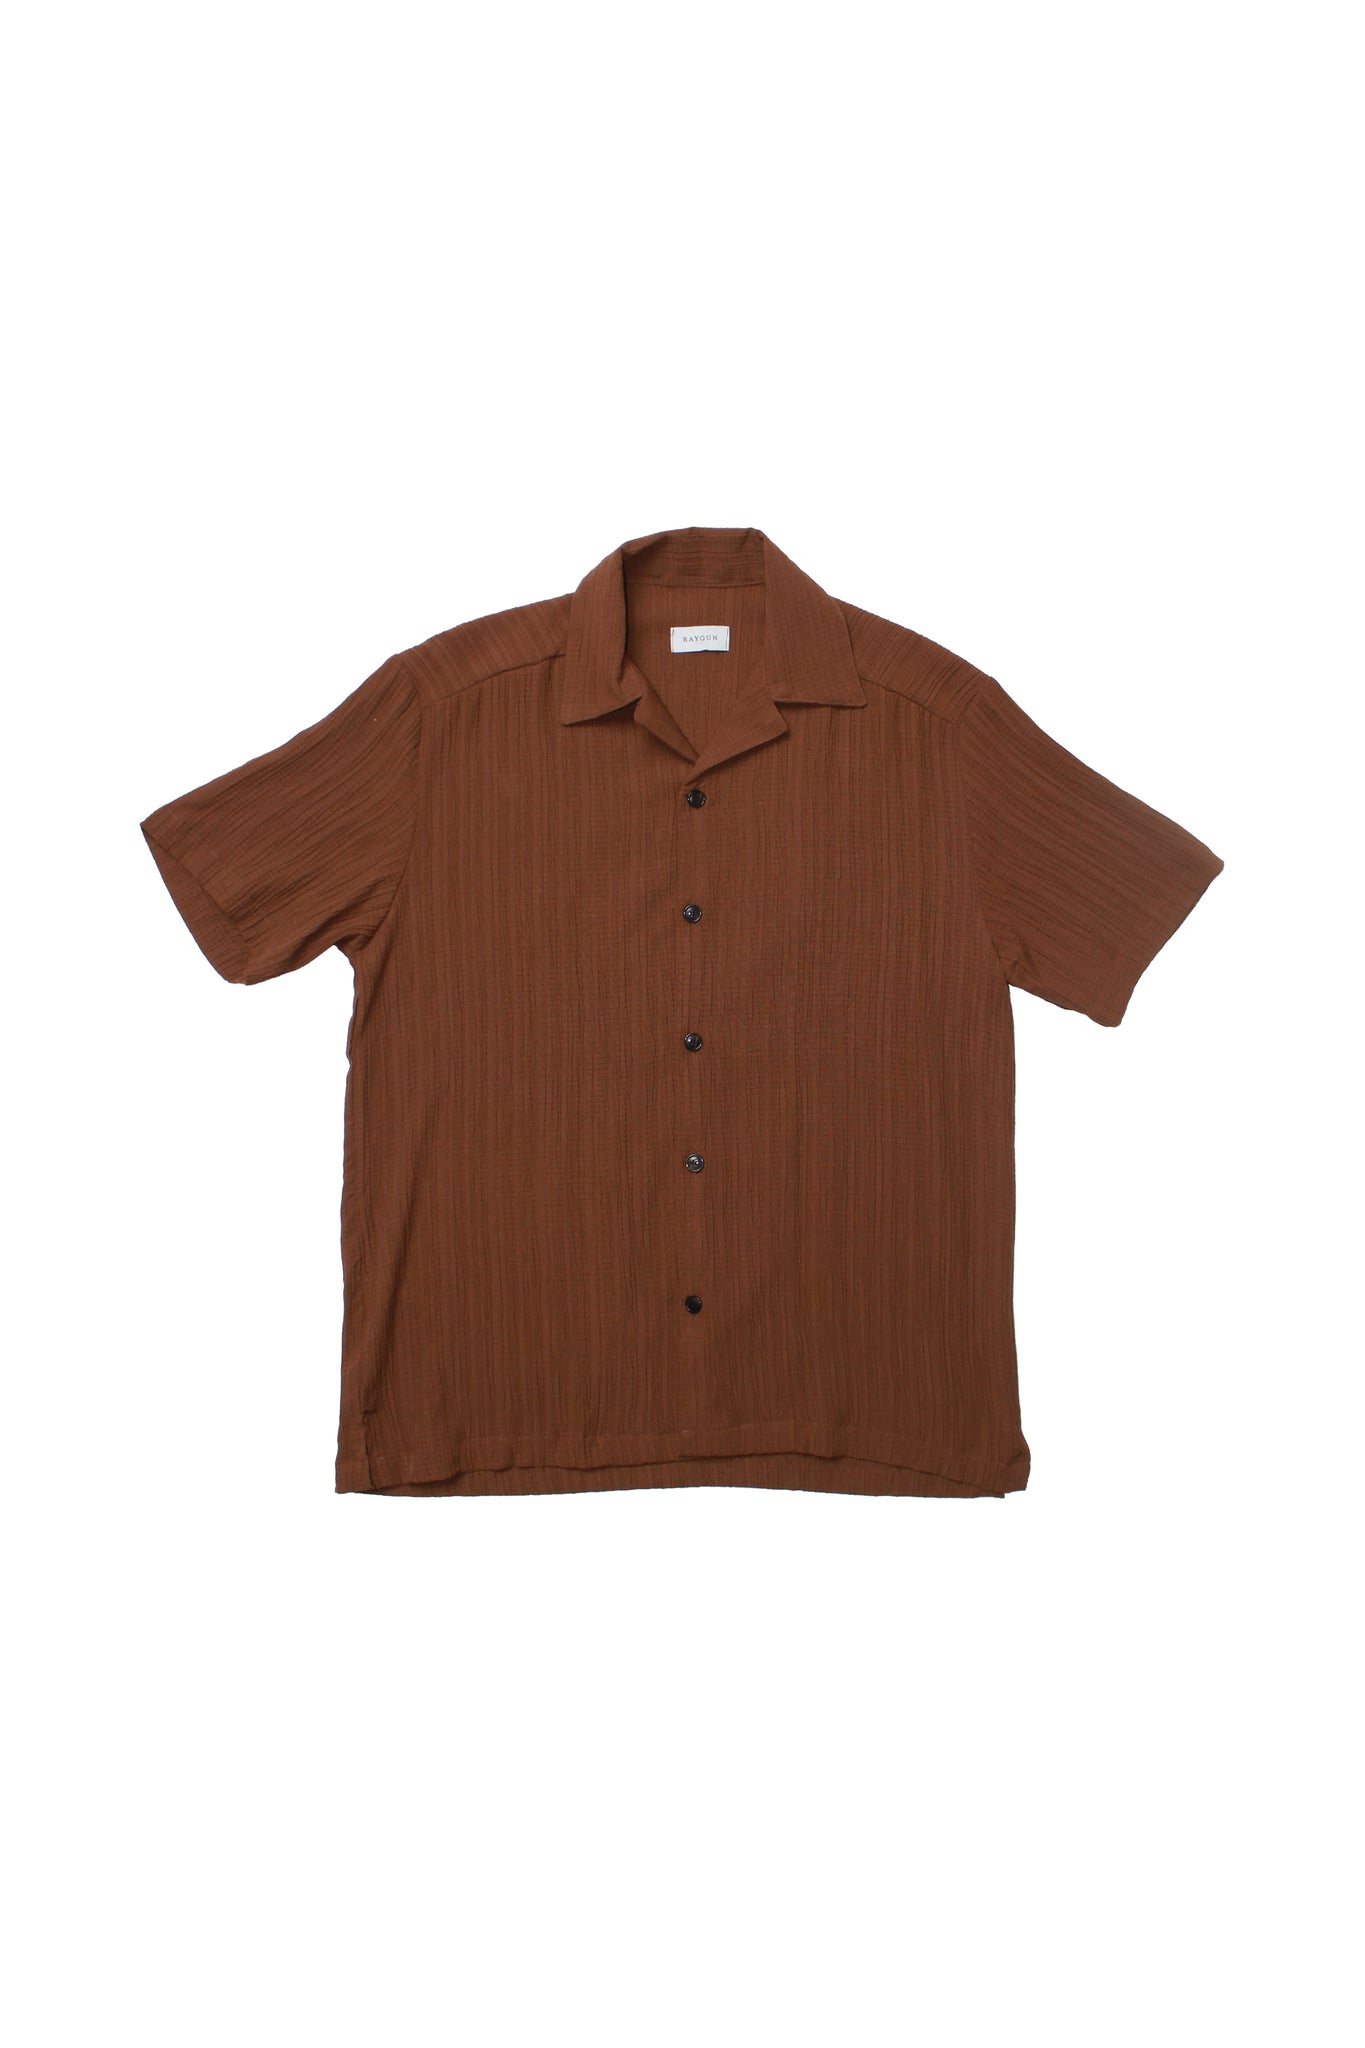 Hazel Pleats Shirts in Brown